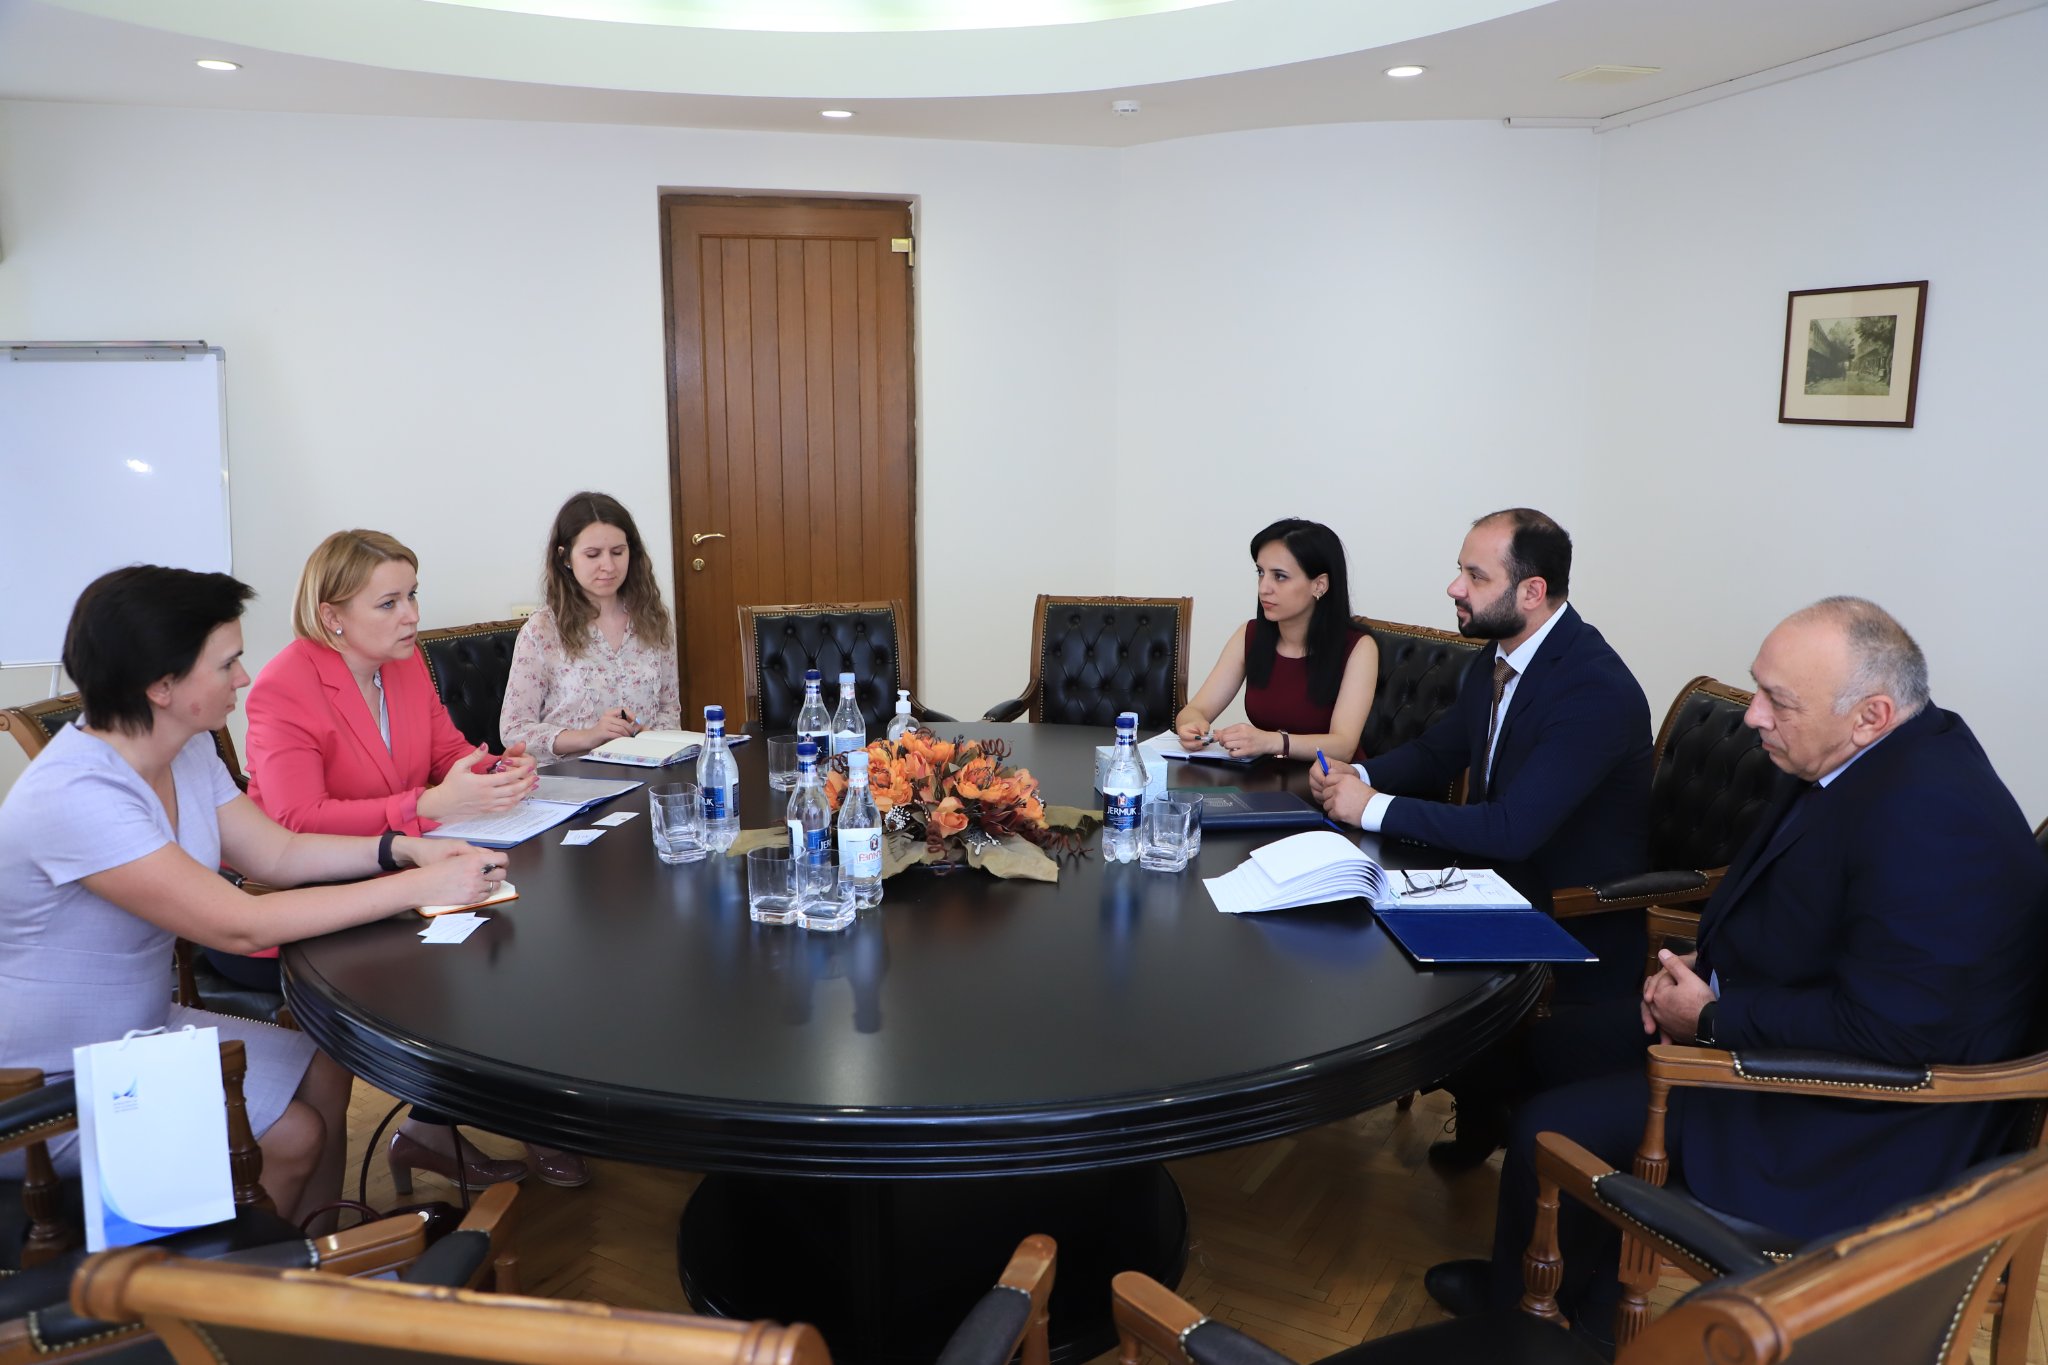 Քննարկվել են հայ-լիտվական տնտեսական կապերը զարգացնելու հնարավորությունները